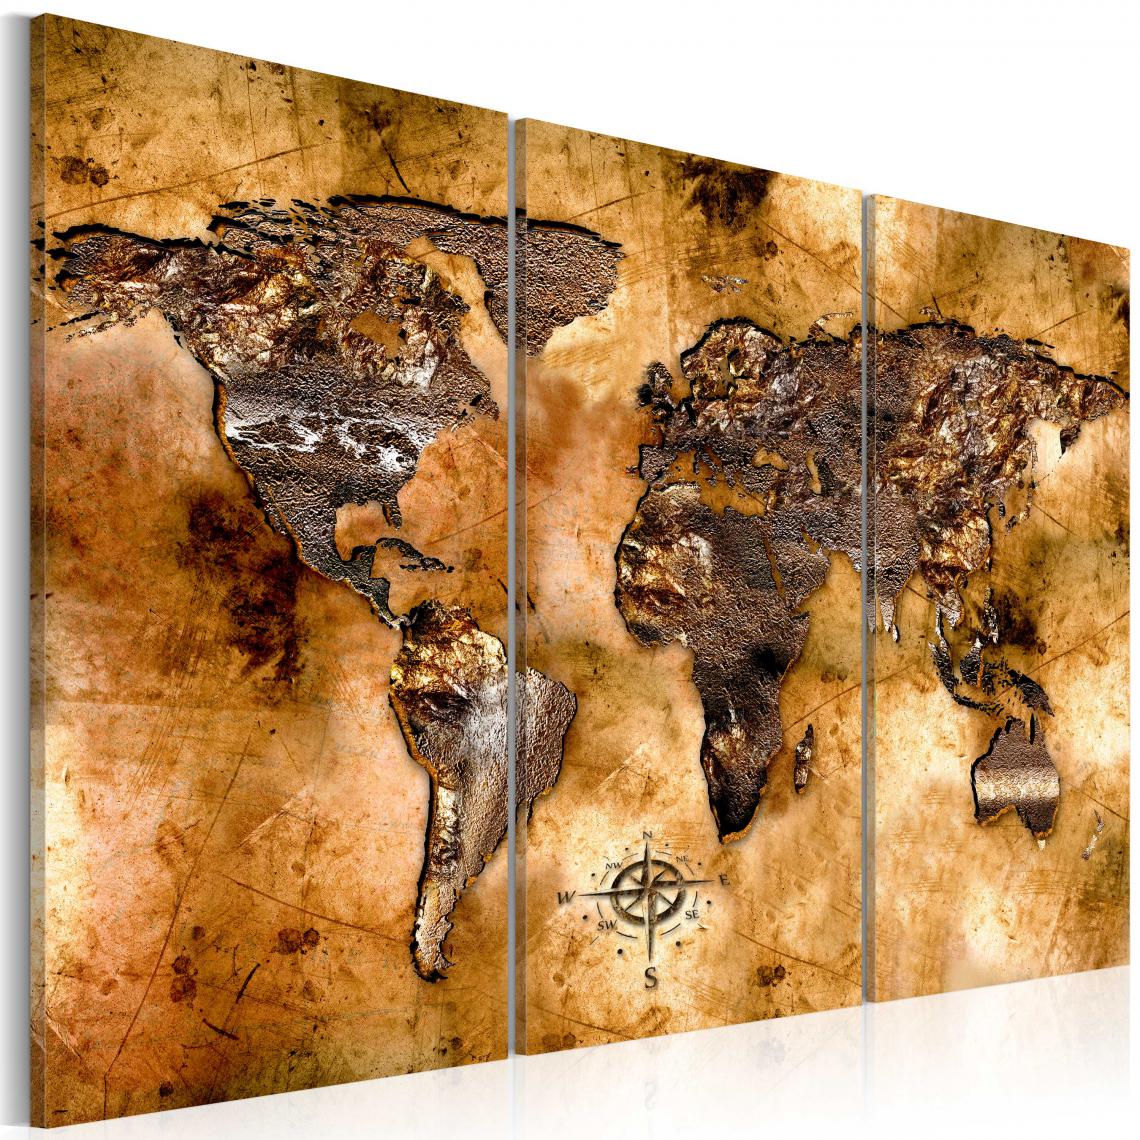 Decoshop26 - Tableau sur toile en 3 panneaux décoration murale image imprimée cadre en bois à suspendre Monde dans des tons opalescents 120x80 cm 11_0004124 - Tableaux, peintures